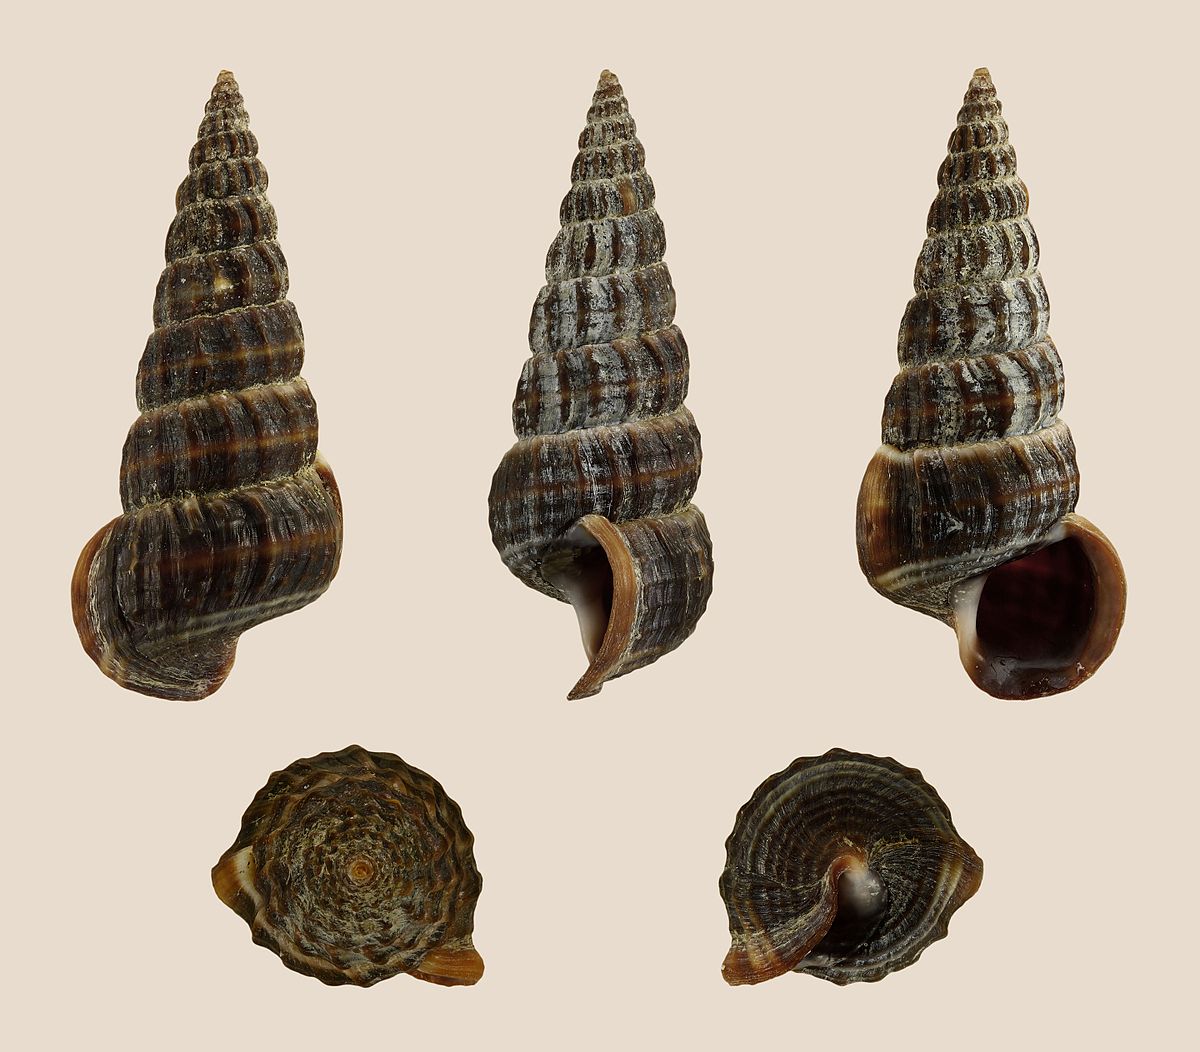 Cone snail - Wikipedia